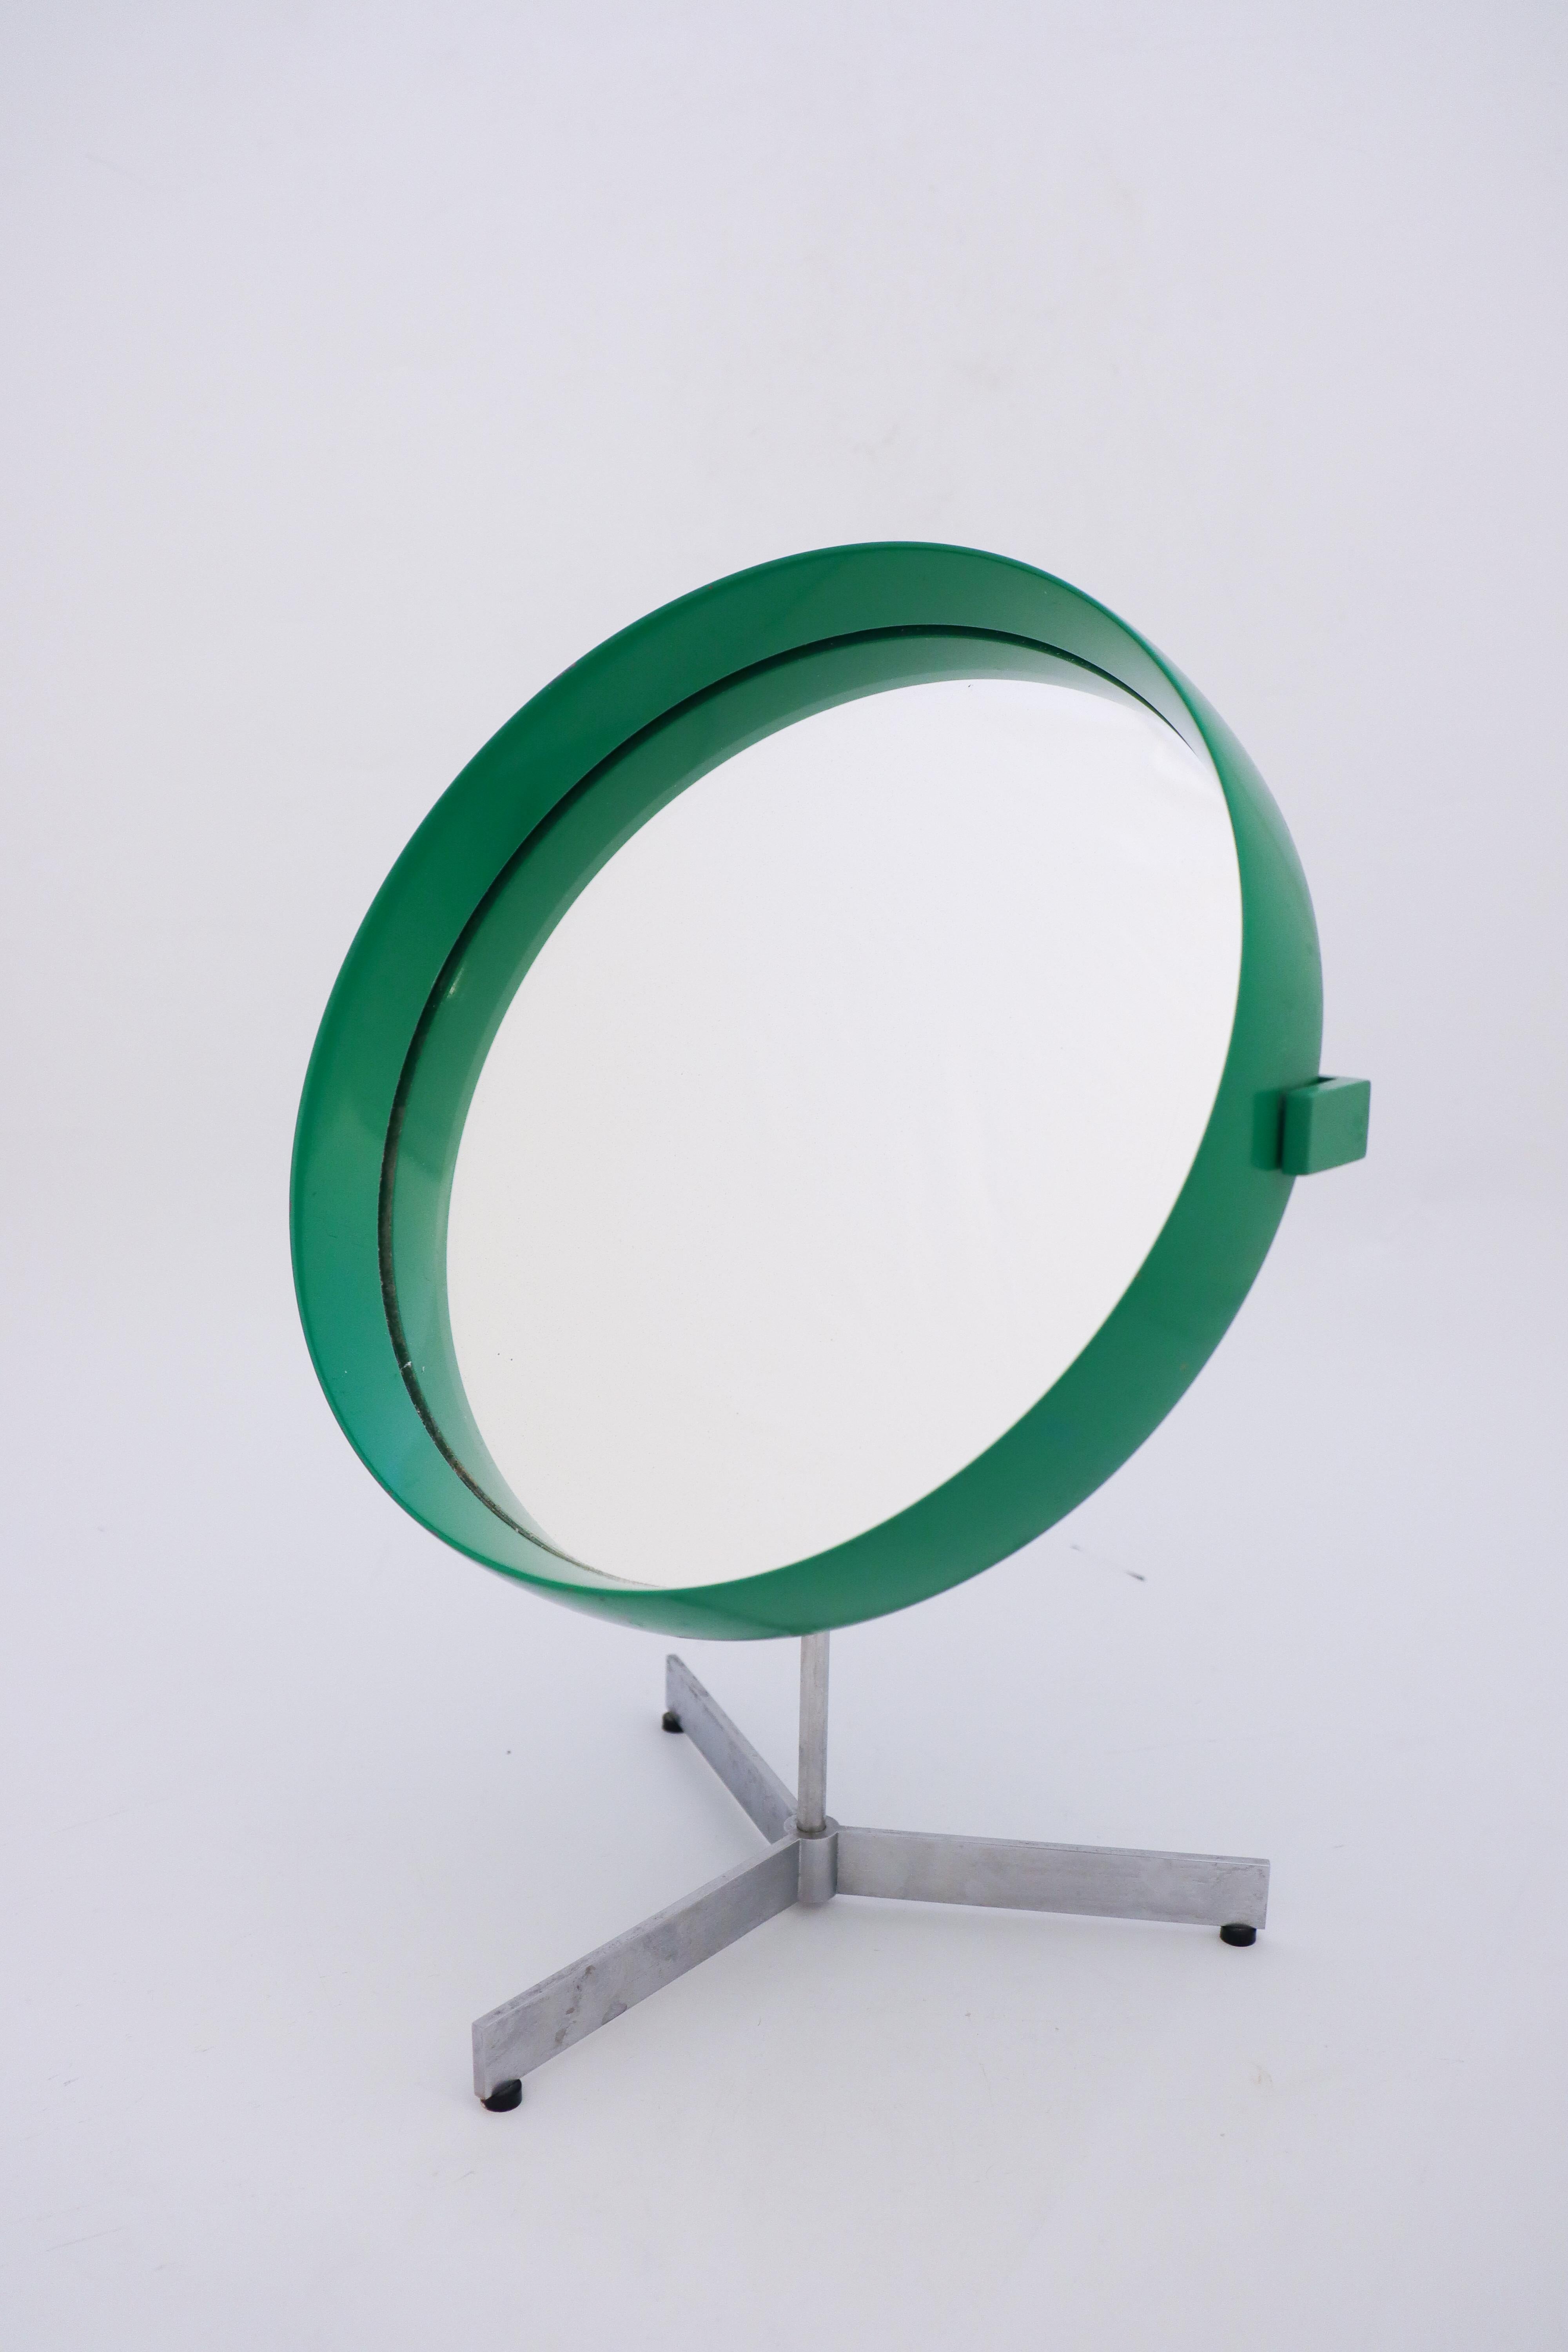 Un joli miroir de table vert conçu par Uno & Östen Kristiansson. Produit par Luxus à Vittsjö, en Suède, dans les années 1960. Base en aluminium brossé. Il est réglable en angle et pivotant. Il est en très bon état, à l'exception d'un peu de